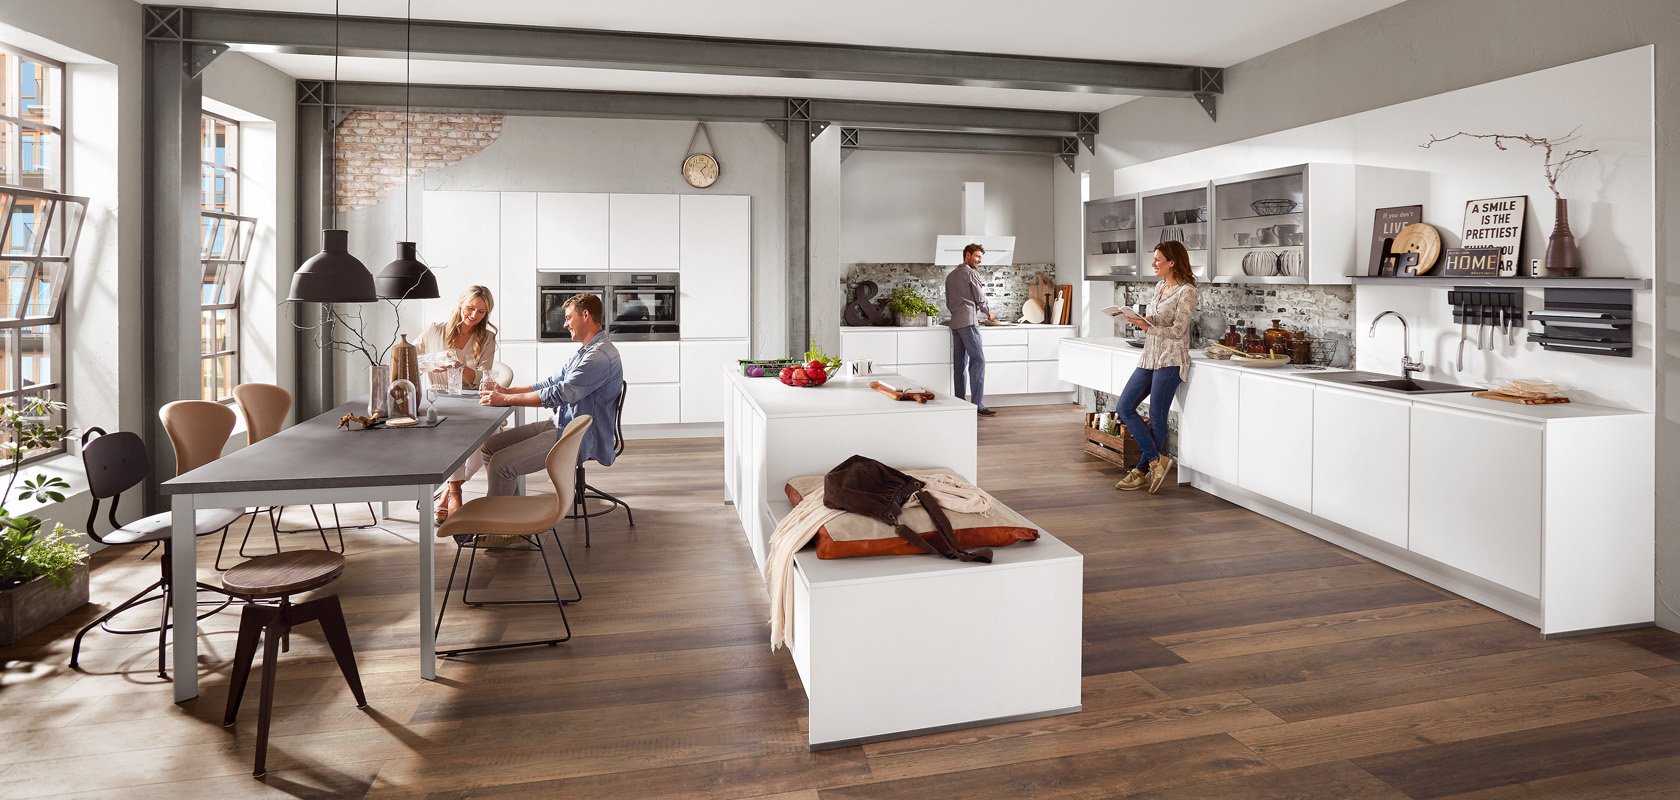 Spaziosa cucina moderna con un'area pranzo che mostra amici vivaci che godono di un pasto, con la luce naturale che valorizza il design d'interni contemporaneo.